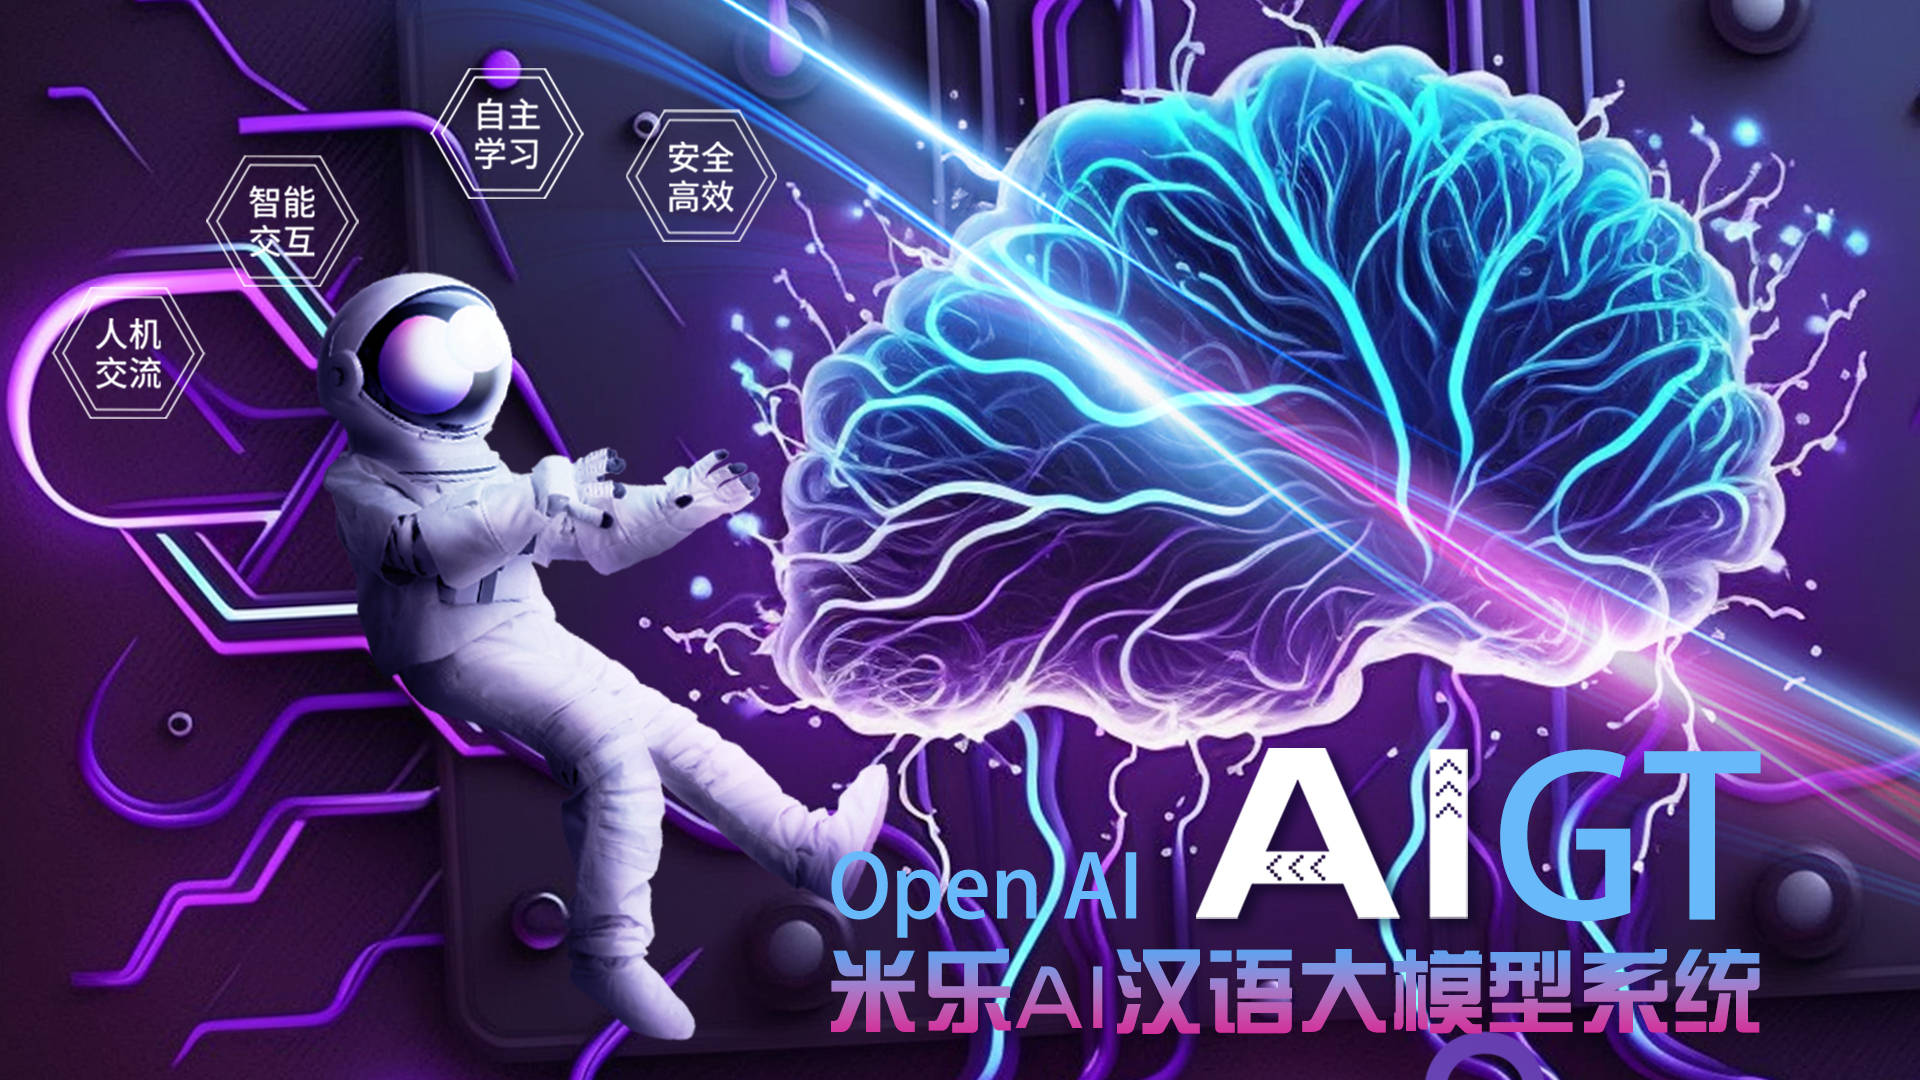 米乐百业——米乐集团与OpenAi公司签約聯合開荒AIGT汉语大模子体系